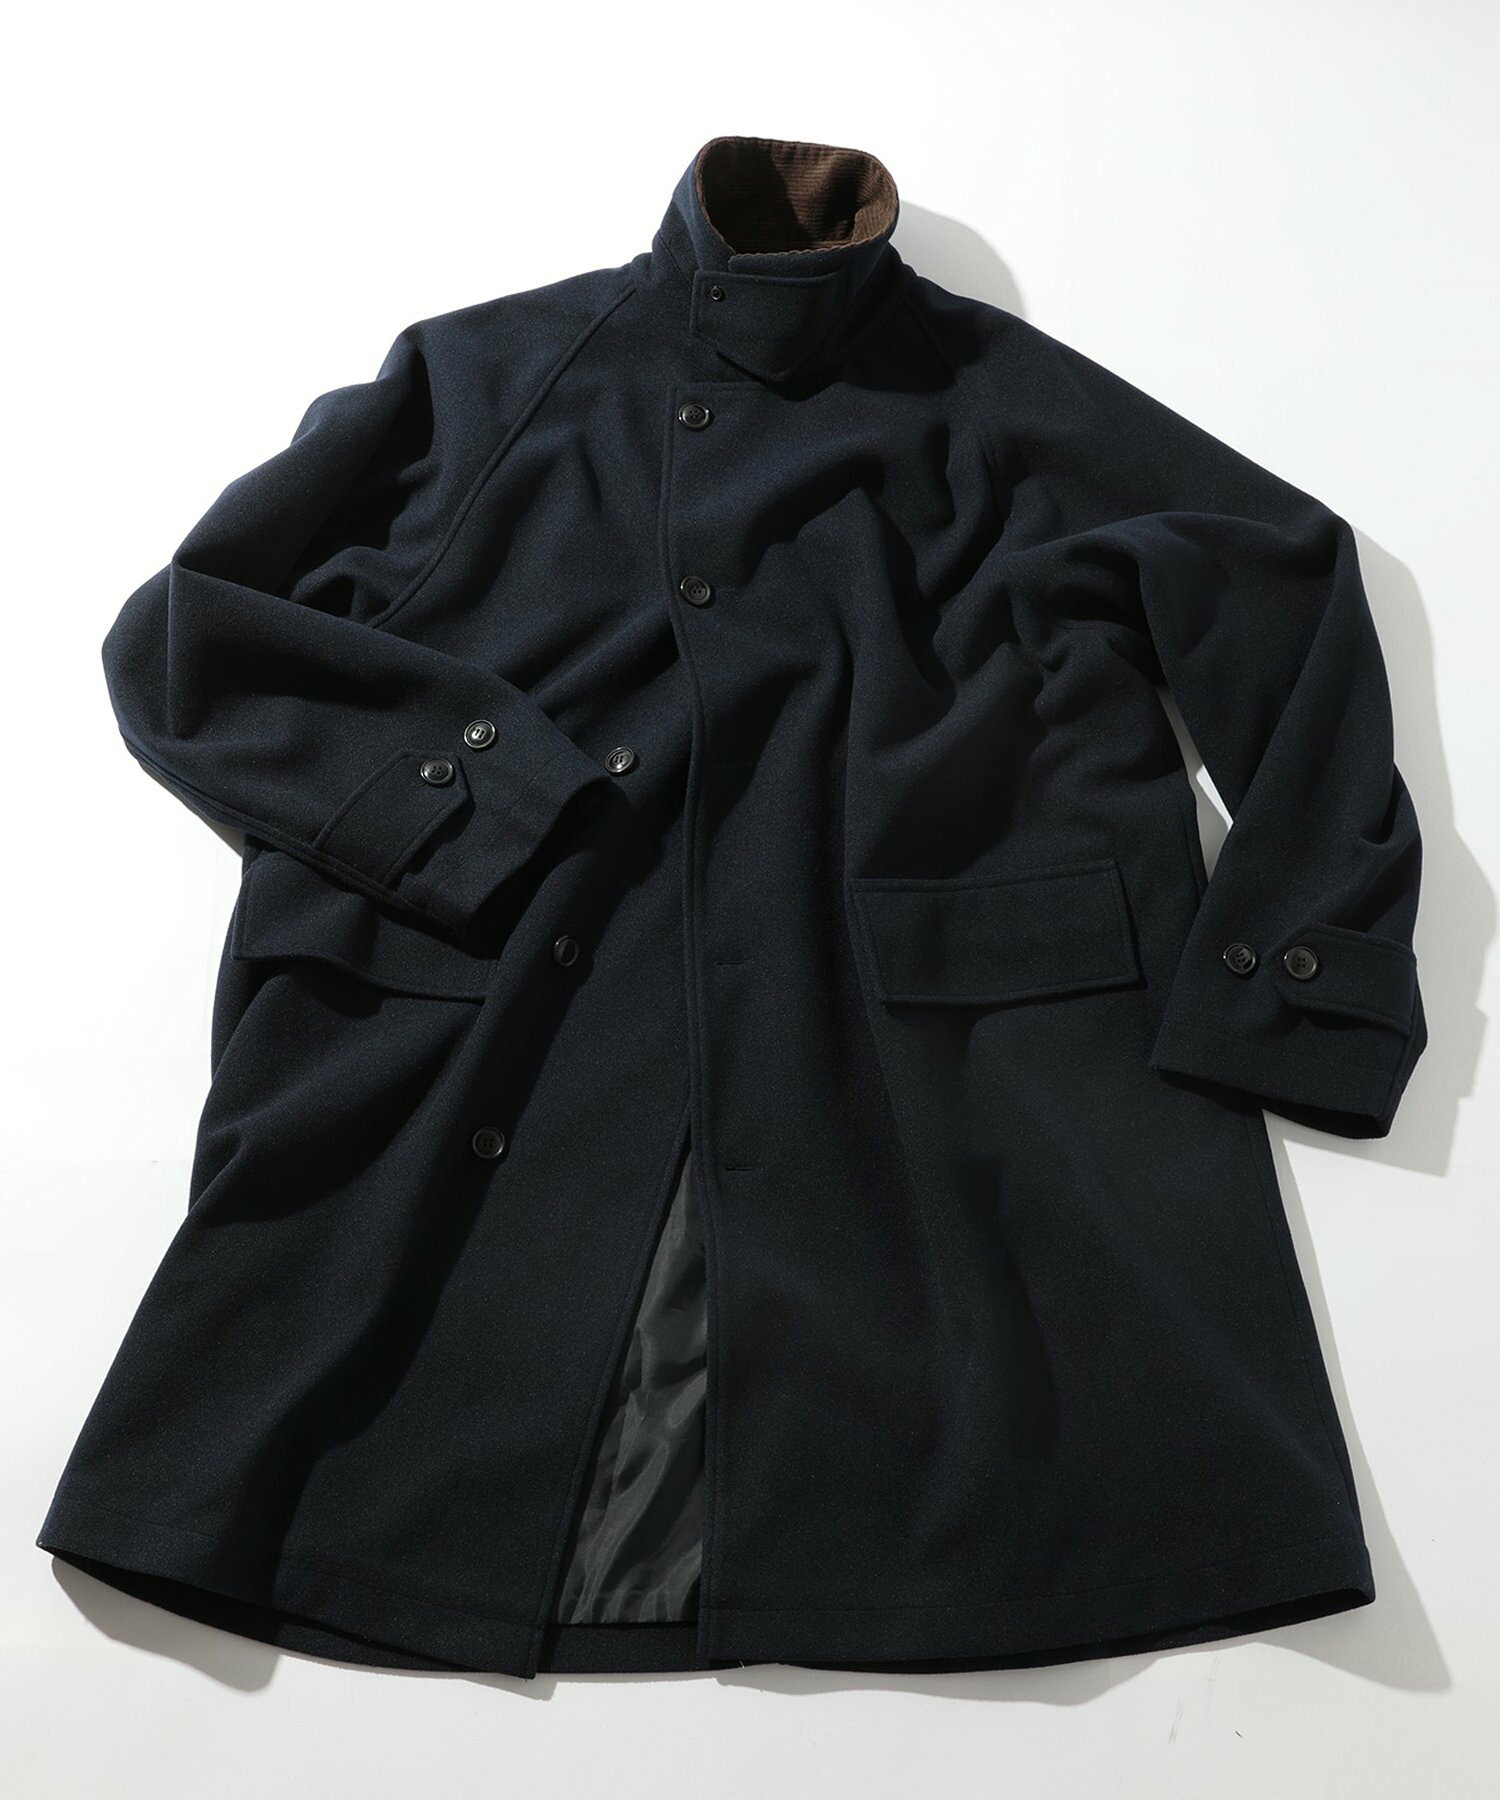 SETUP7/■vintage archive coat ヴィンテージアーカイブコート スタンドカラー ステンカラーコート 重アウター 長袖